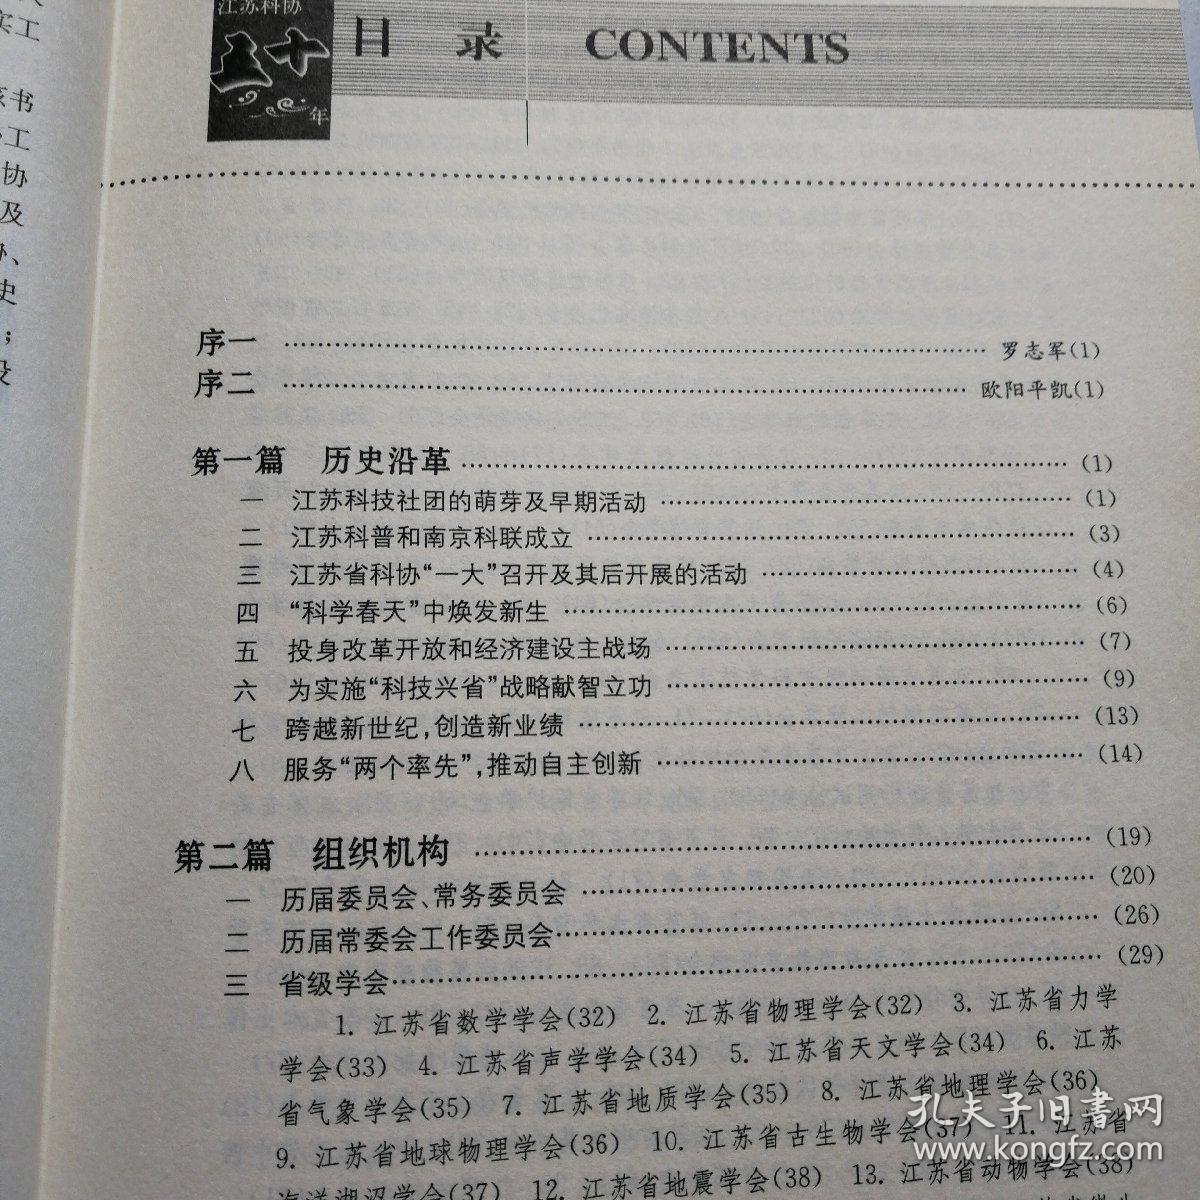 江苏科协五十年:1959-2009